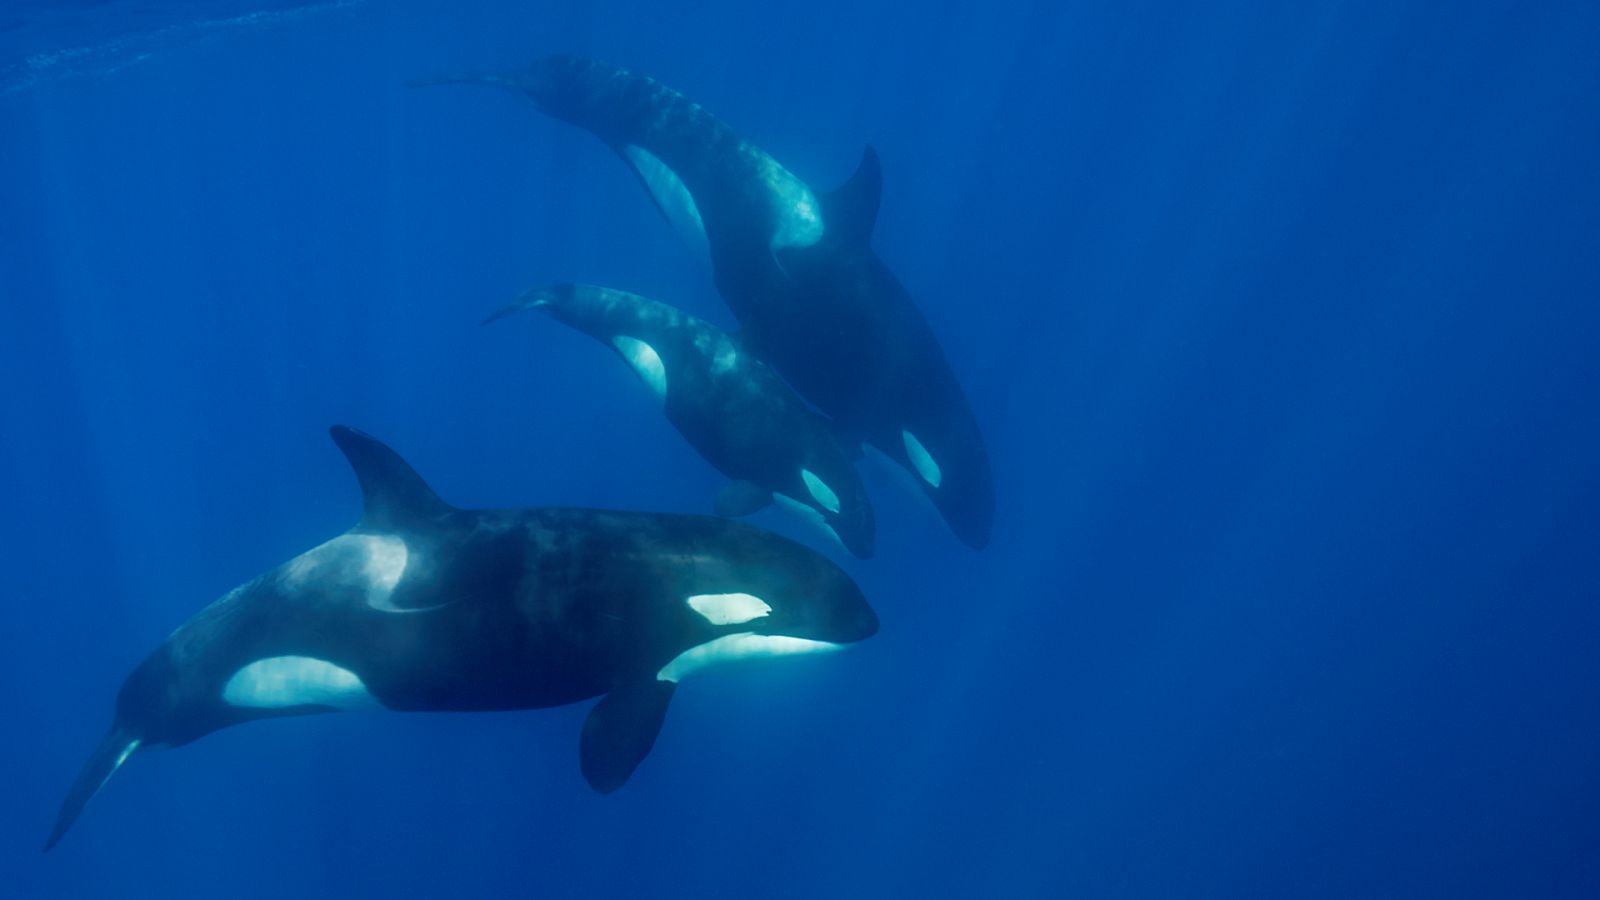 Las orcas golpean barcos en aguas del Estrecho y Galicia